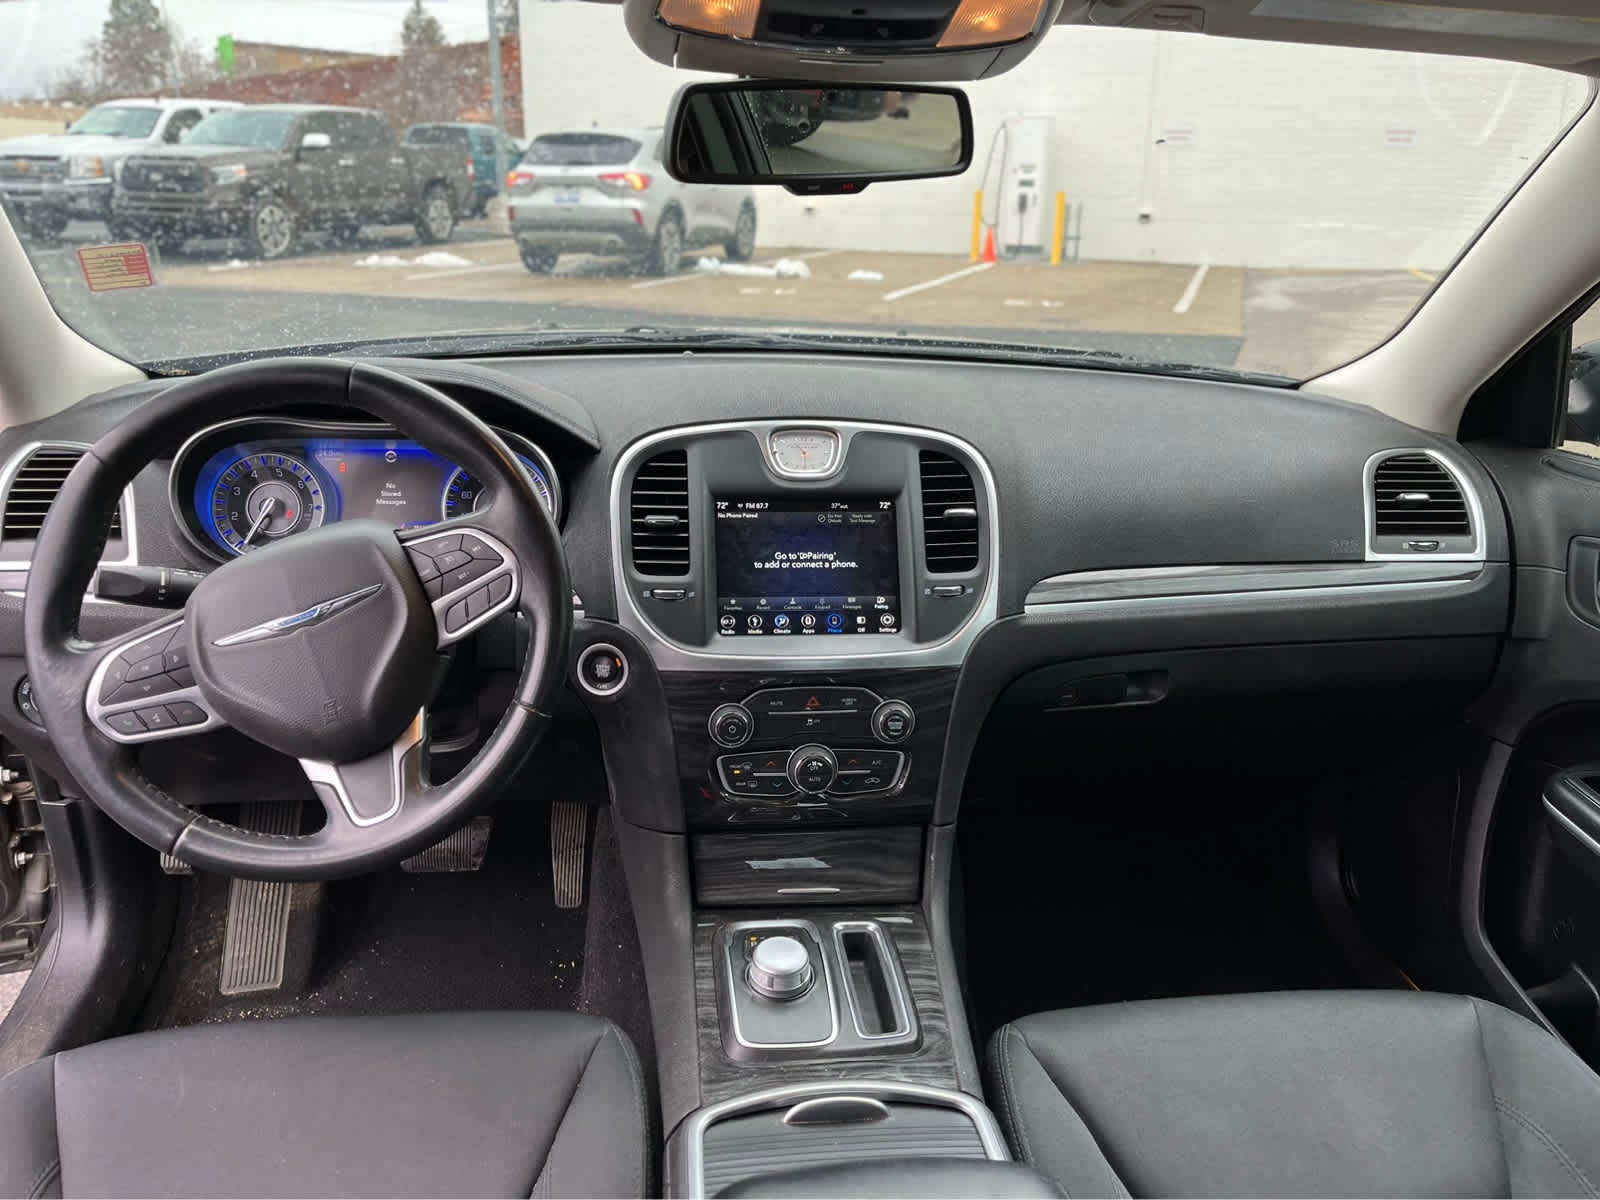 2019 Chrysler 300 Touring RWD